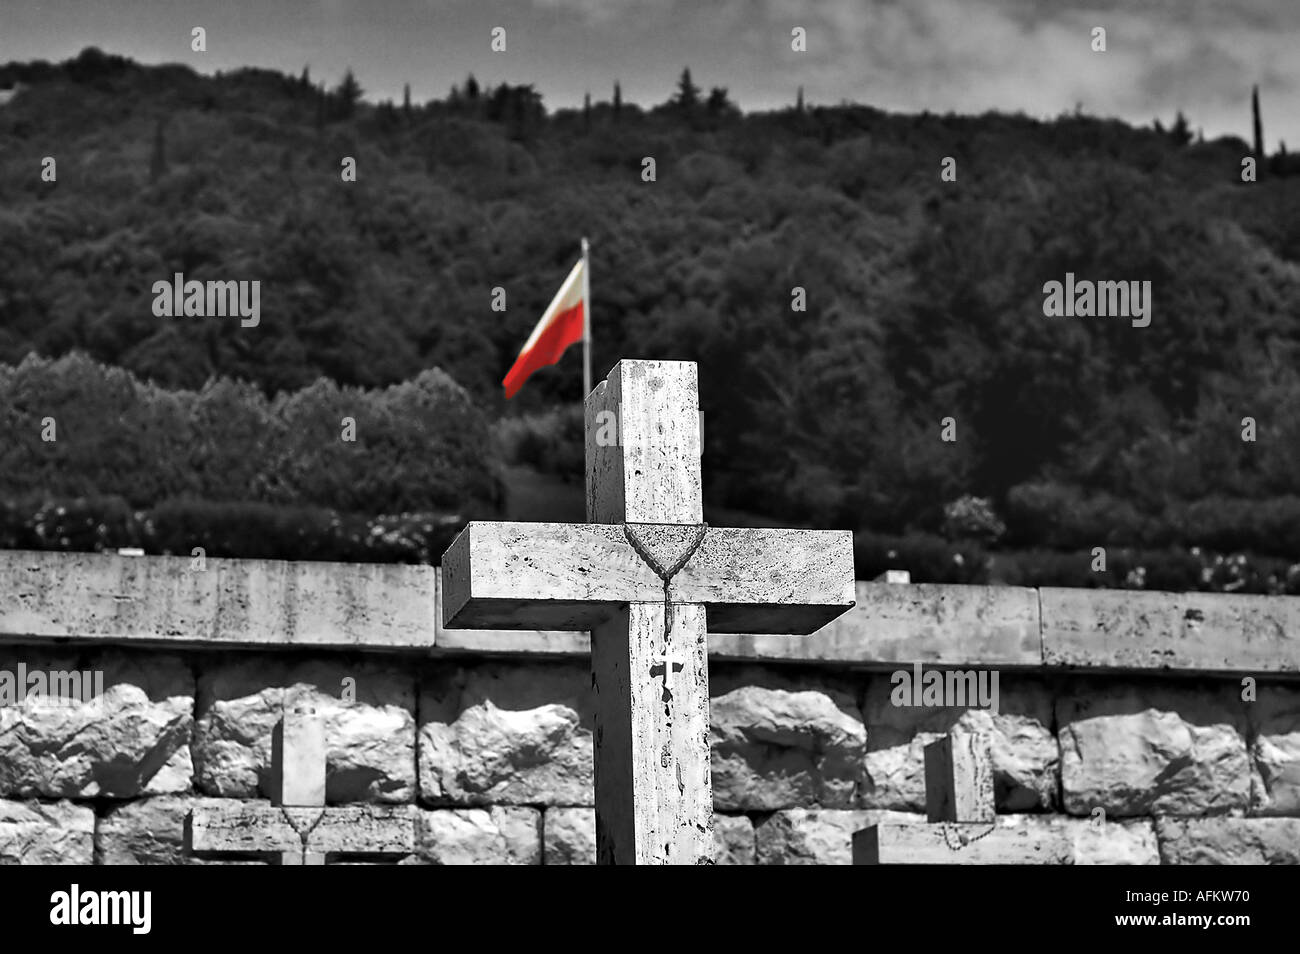 Die polnischen Soldatenfriedhof am Monte Cassino Abbazia Italien. Ort der einen unerbittlichen Kampf der 2. Weltkrieg zwischen den Alliierten und Nazis. Stockfoto